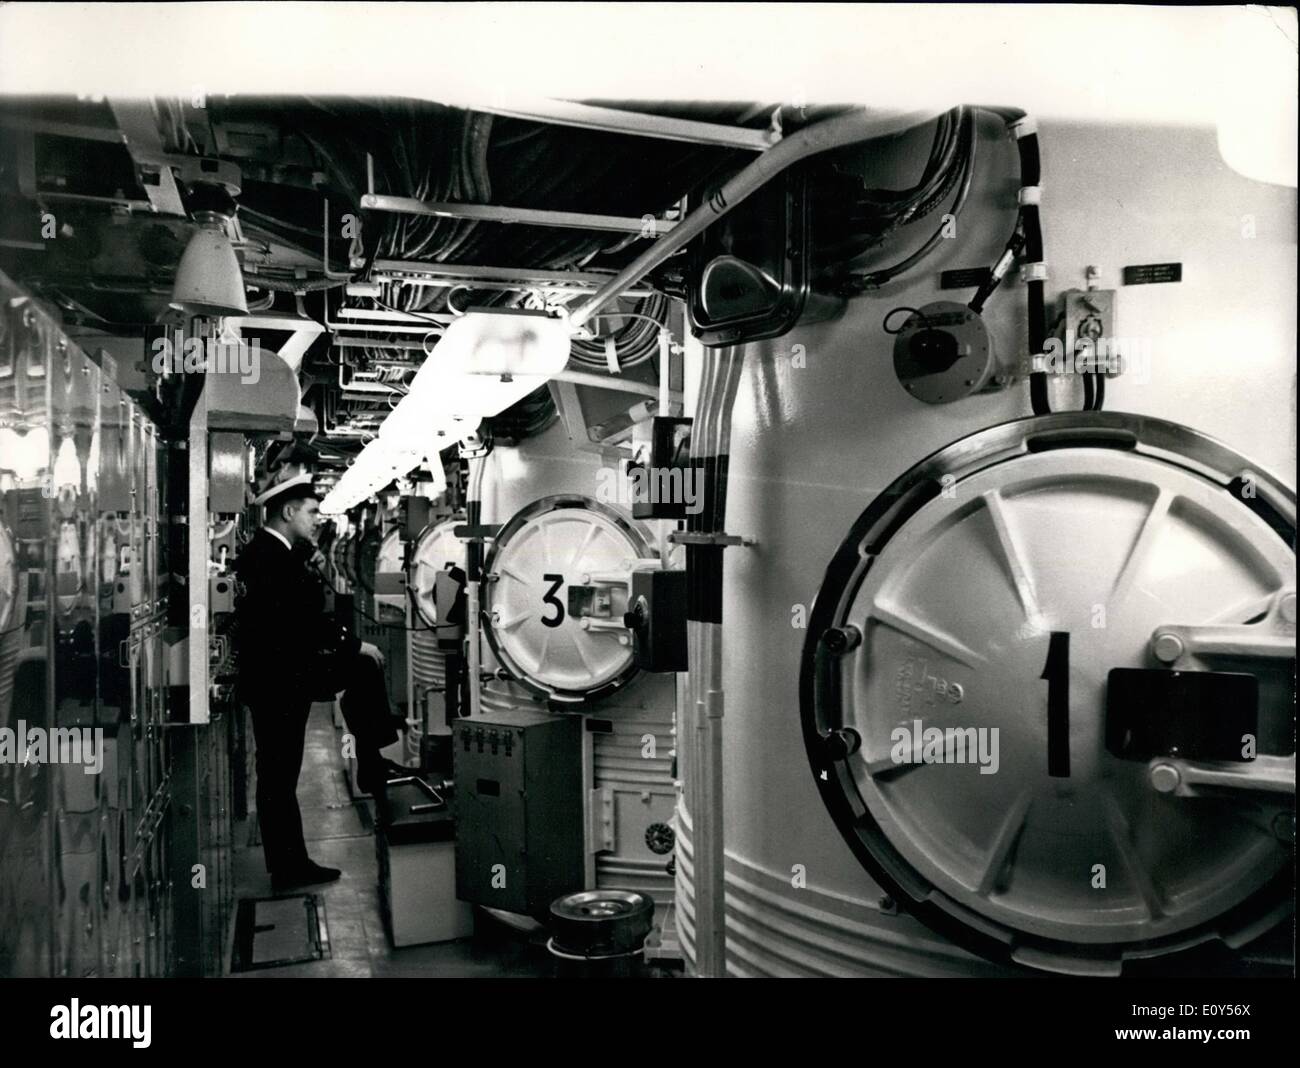 11 novembre 1968 - Cérémonie de mise en service de H.M.S. La renommée de cérémonie a commandé le HMS Renown, sous-marin à propulsion nucléaire, Polaris a eu lieu aujourd'hui au chantier naval Cammell Laird de Birkenhead et Cie (chantiers navals et ingénieurs) Ltd. d'ici le milieu de 1969, elle va rejoindre le HMS Resolution et HMS Repulse dans le plan opérationnel de la force Polaris. Le premier des sous-marins Polaris à construire par Cammell Laird's, HMS Renown a été lancé en février 1967. Photo : Keystone montre Chef artificier, Hisemen explosées Ron de Staines, Mddx, vu dans la chambre, 16 missiles tube à bord du HMS Renown aujourd'hui. Banque D'Images